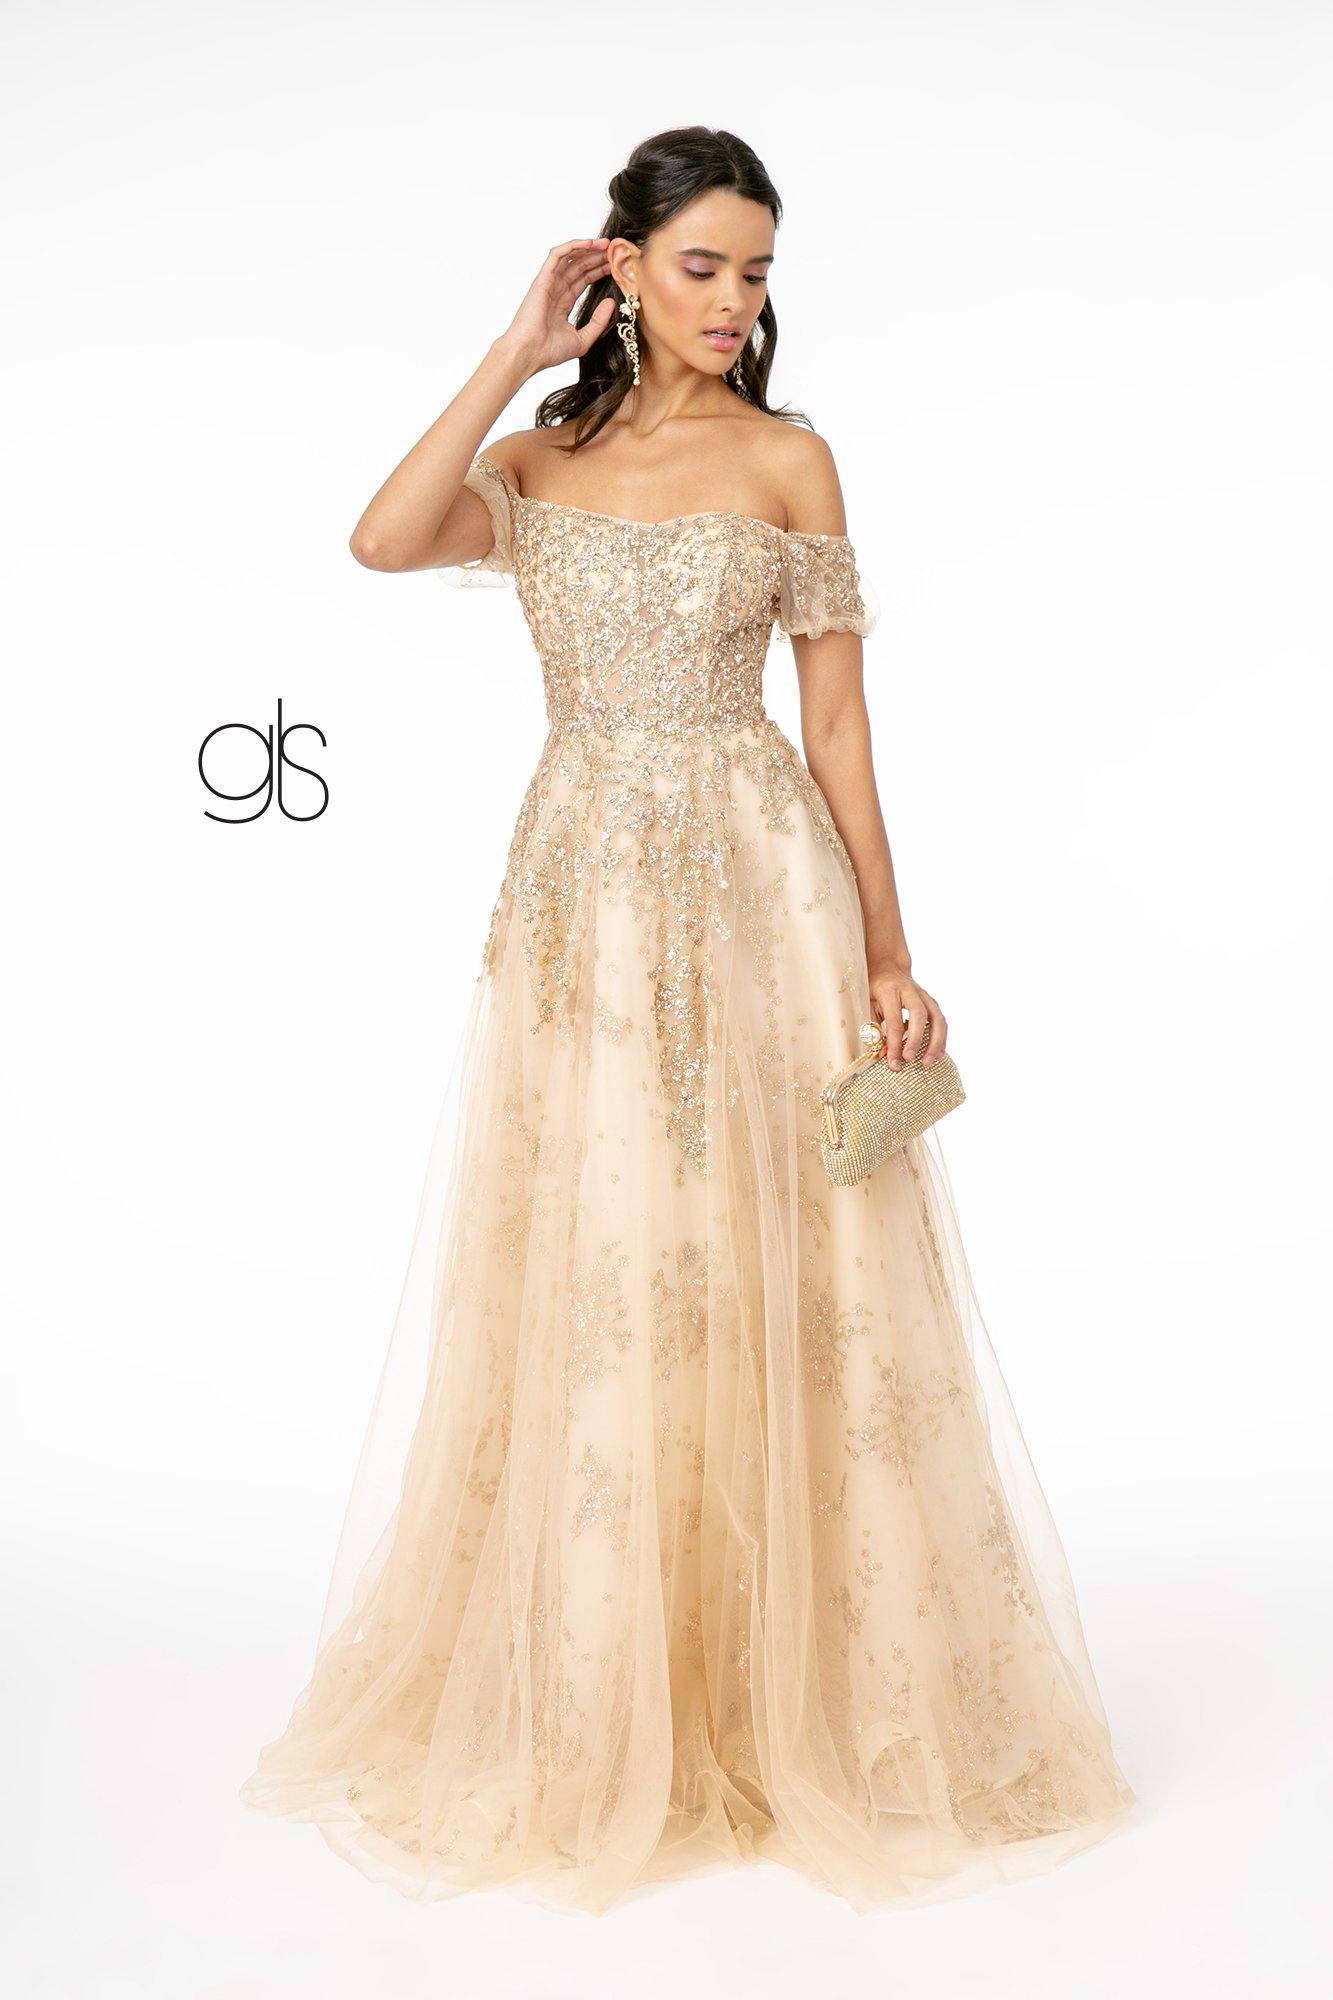 Embellished Glitter Mesh Long Prom Dress - The Dress Outlet Elizabeth K